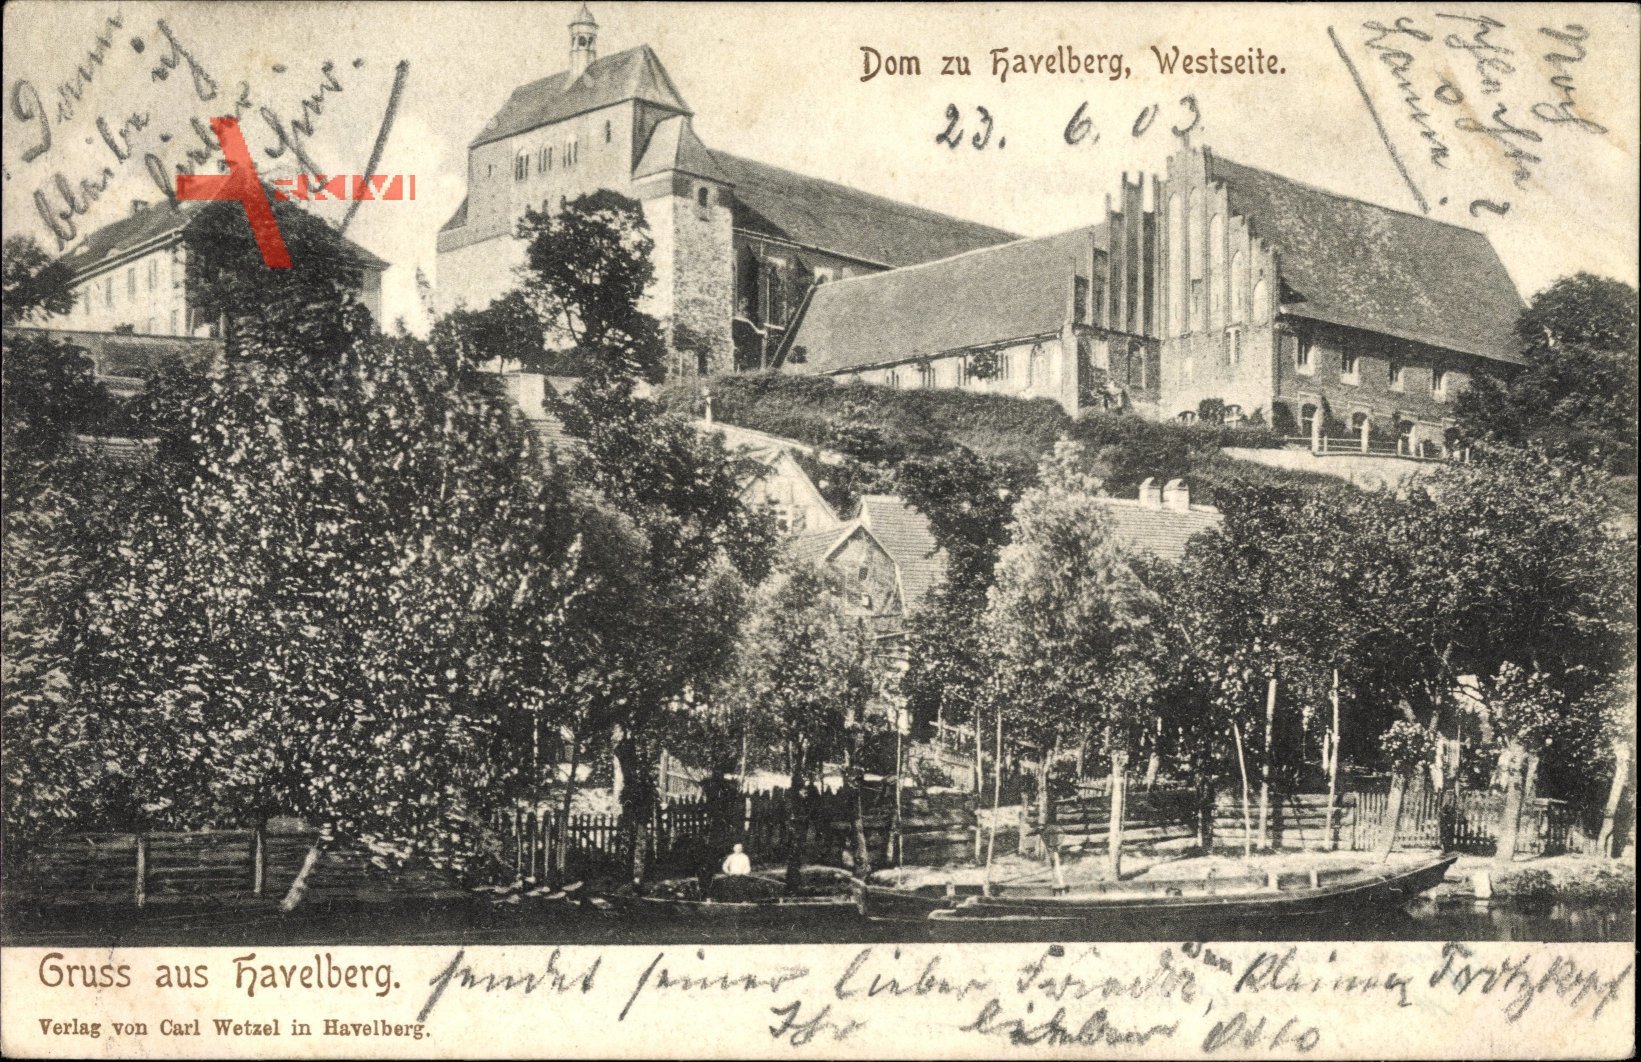 Havelberg in Sachsen Anhalt, Blick auf den Dom, Westseite, Häuser